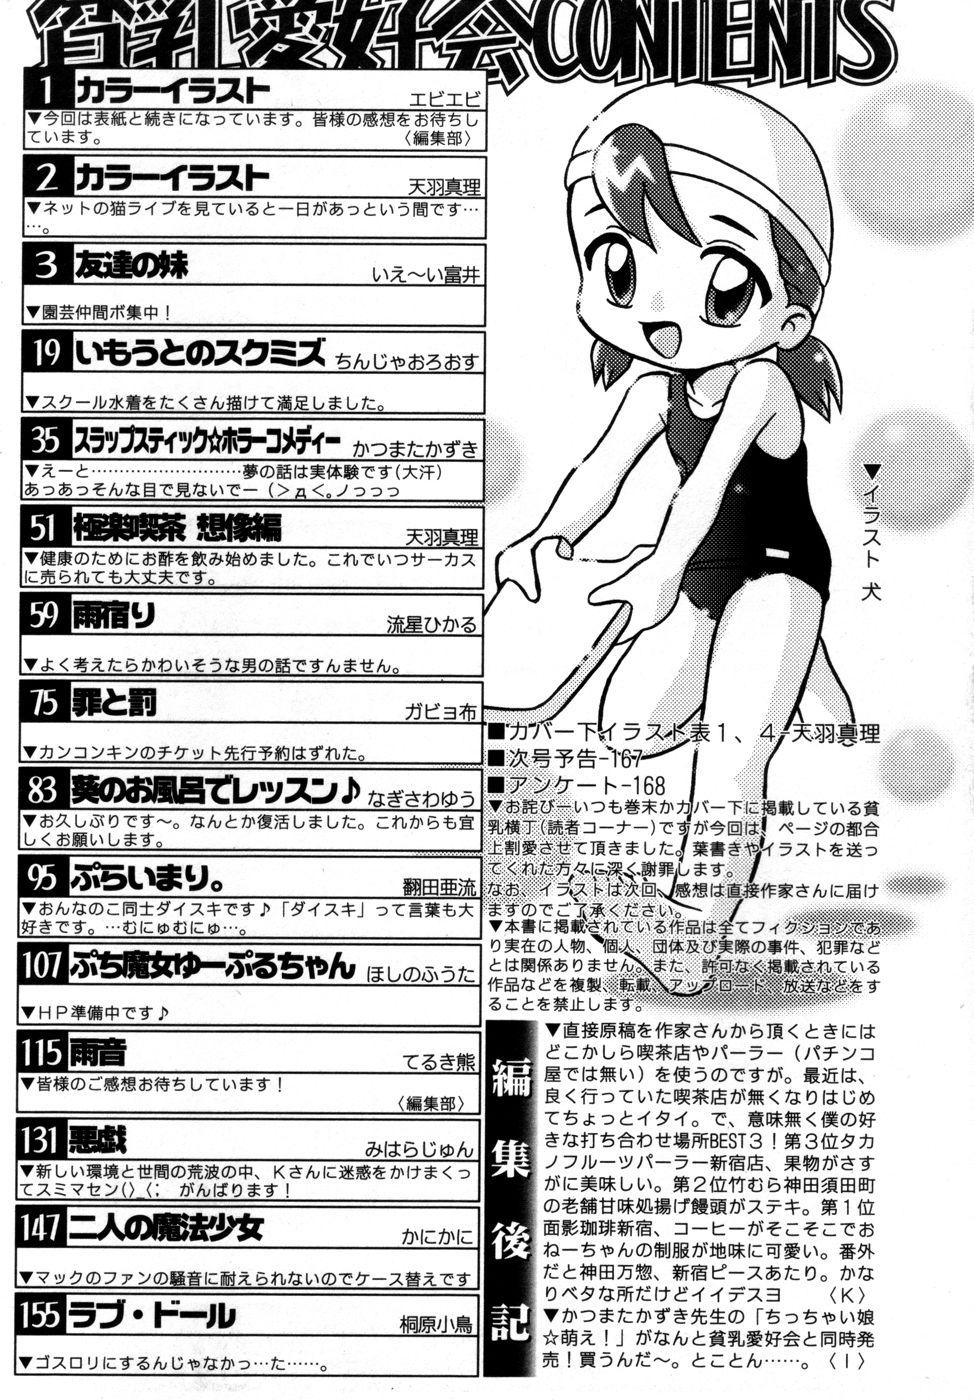 Costume Hin-nyu v27 - Hin-nyu Aikou-kai Blackmail - Page 174